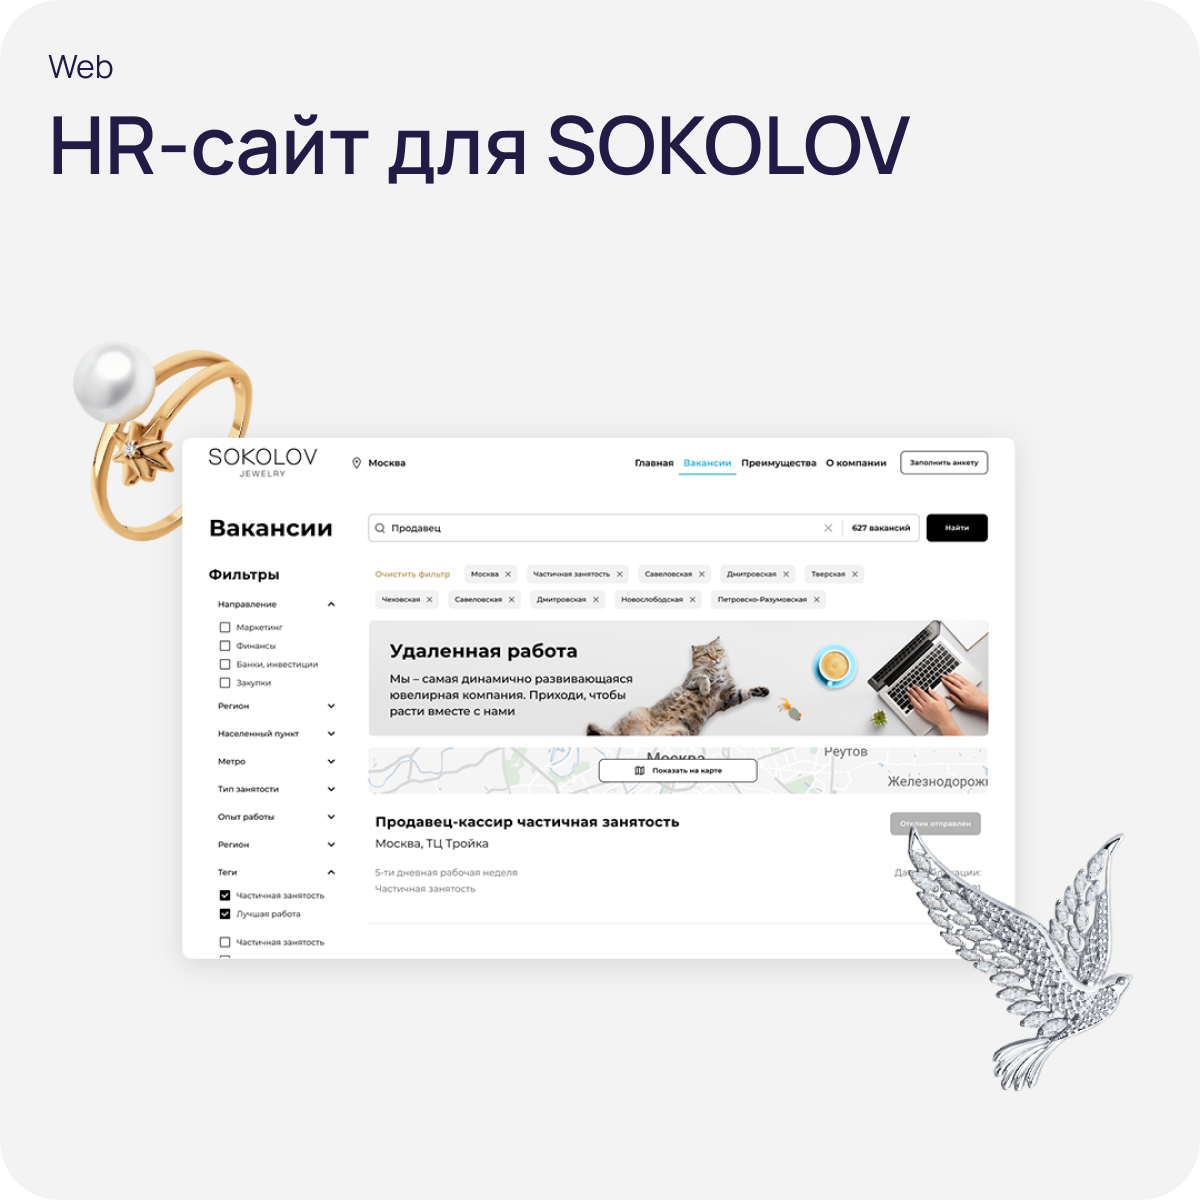 HR-сайт для SOKOLOV